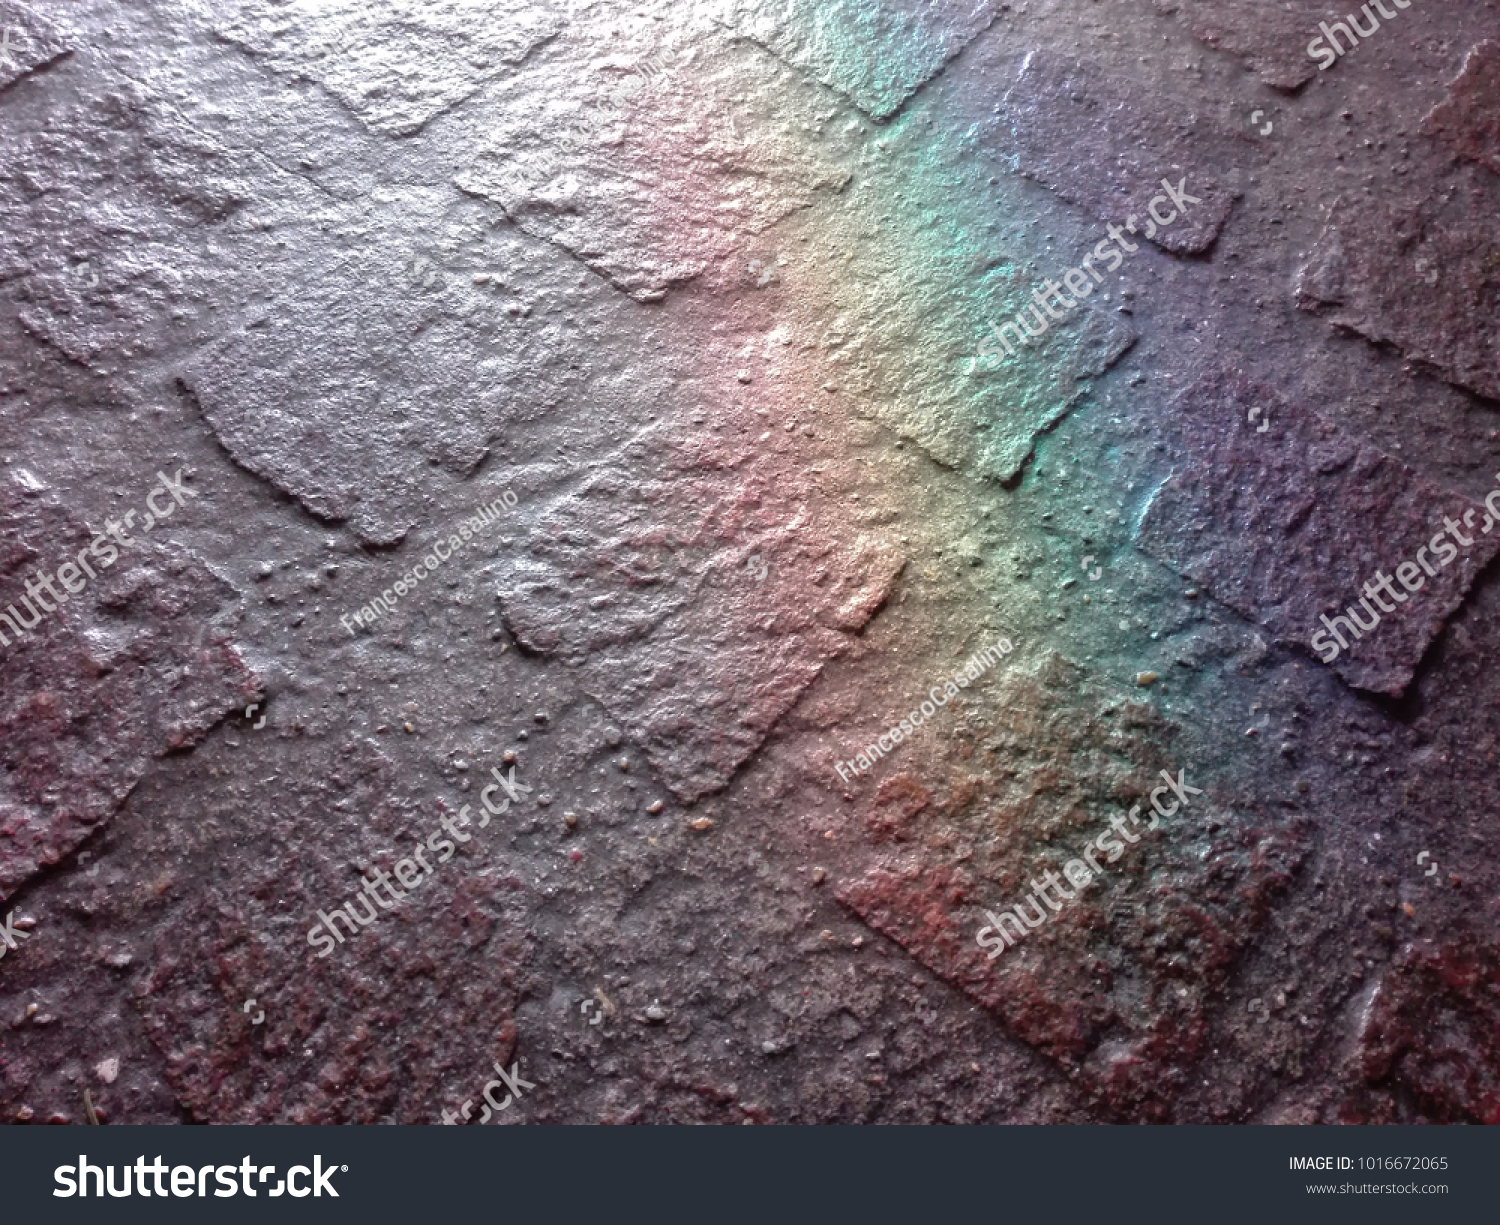 A stone floor lit by a window. A random reflection creates a rainbow on it. #1016672065